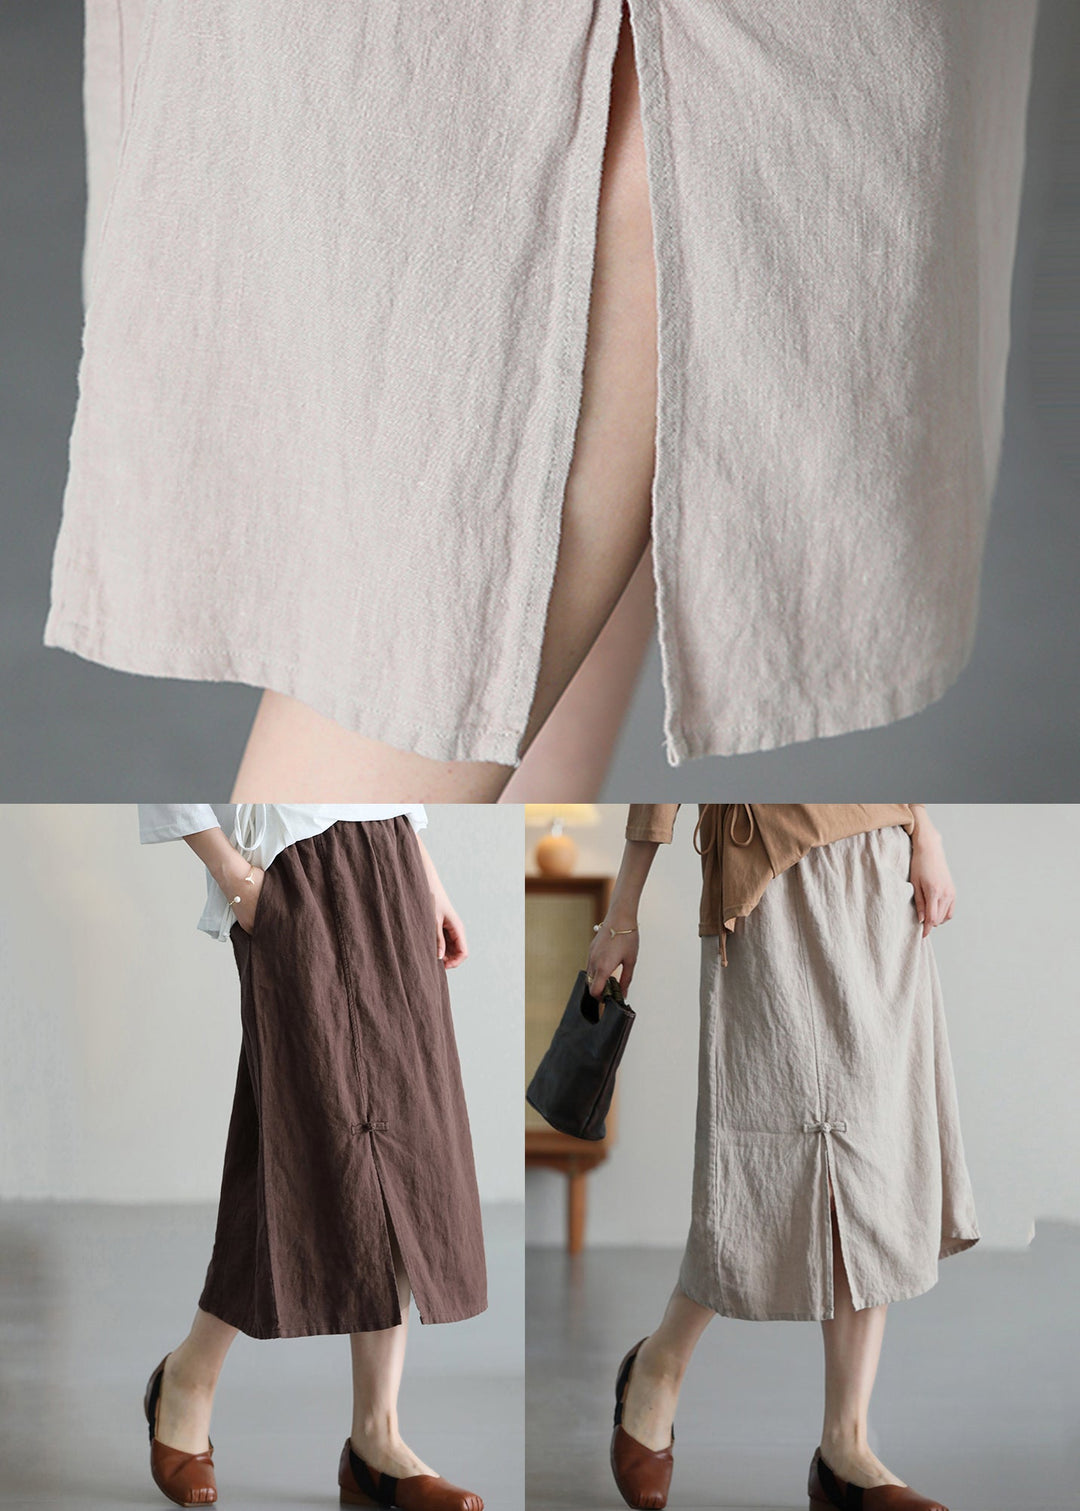 Casual Versatile Coffee Chinese Button Linen Skirt Summer